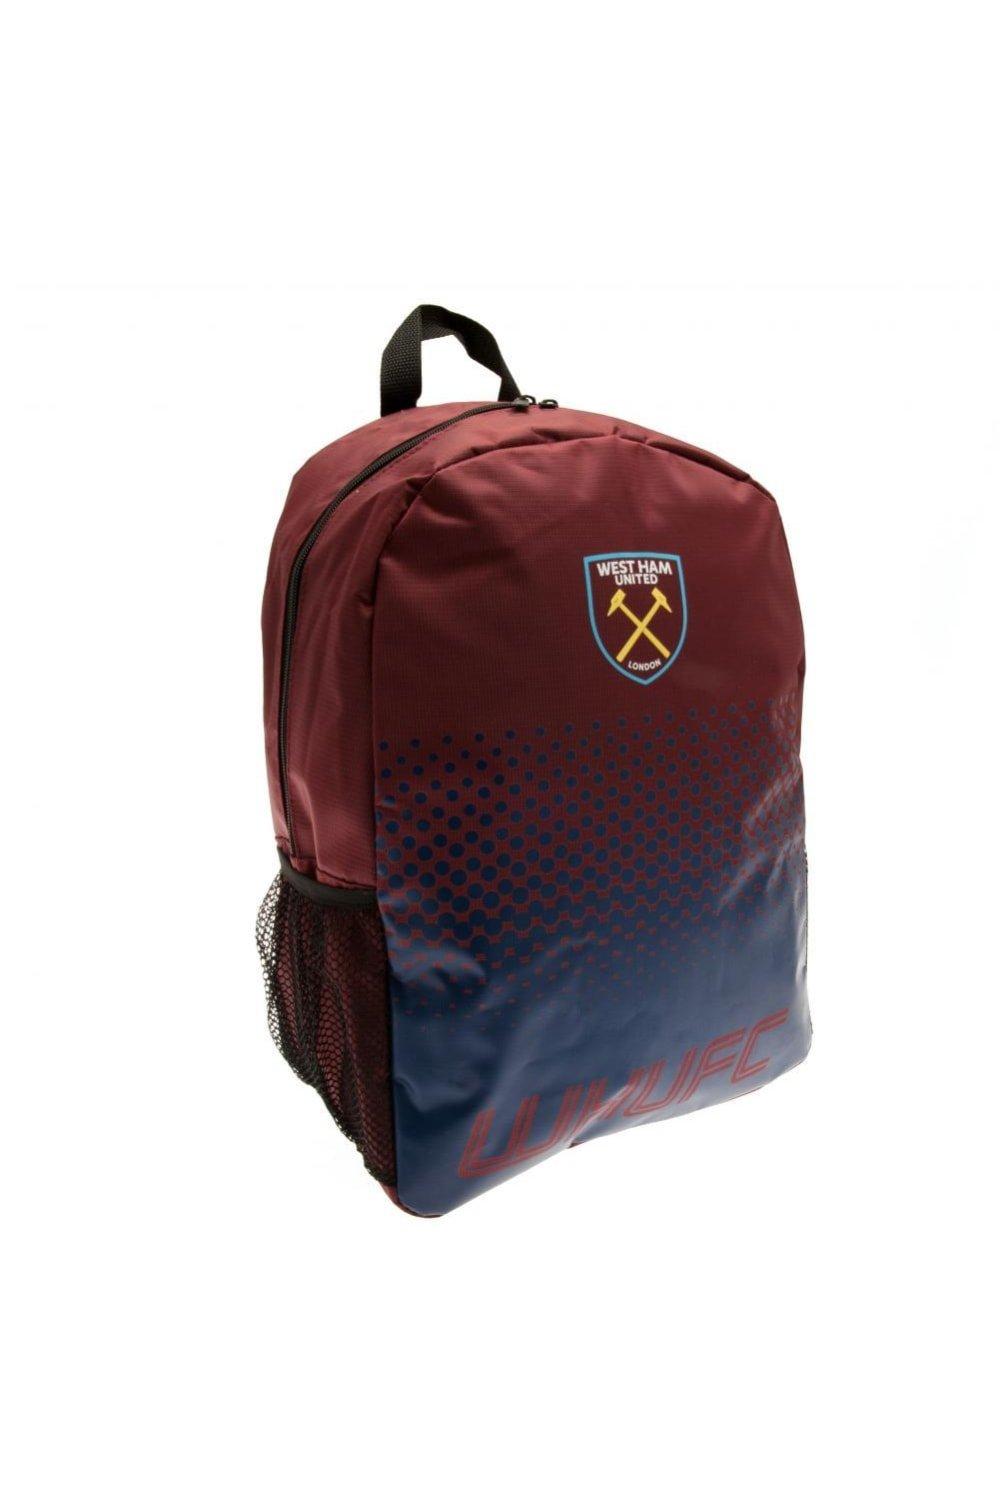 Рюкзак с дизайном Fade West Ham United FC, красный